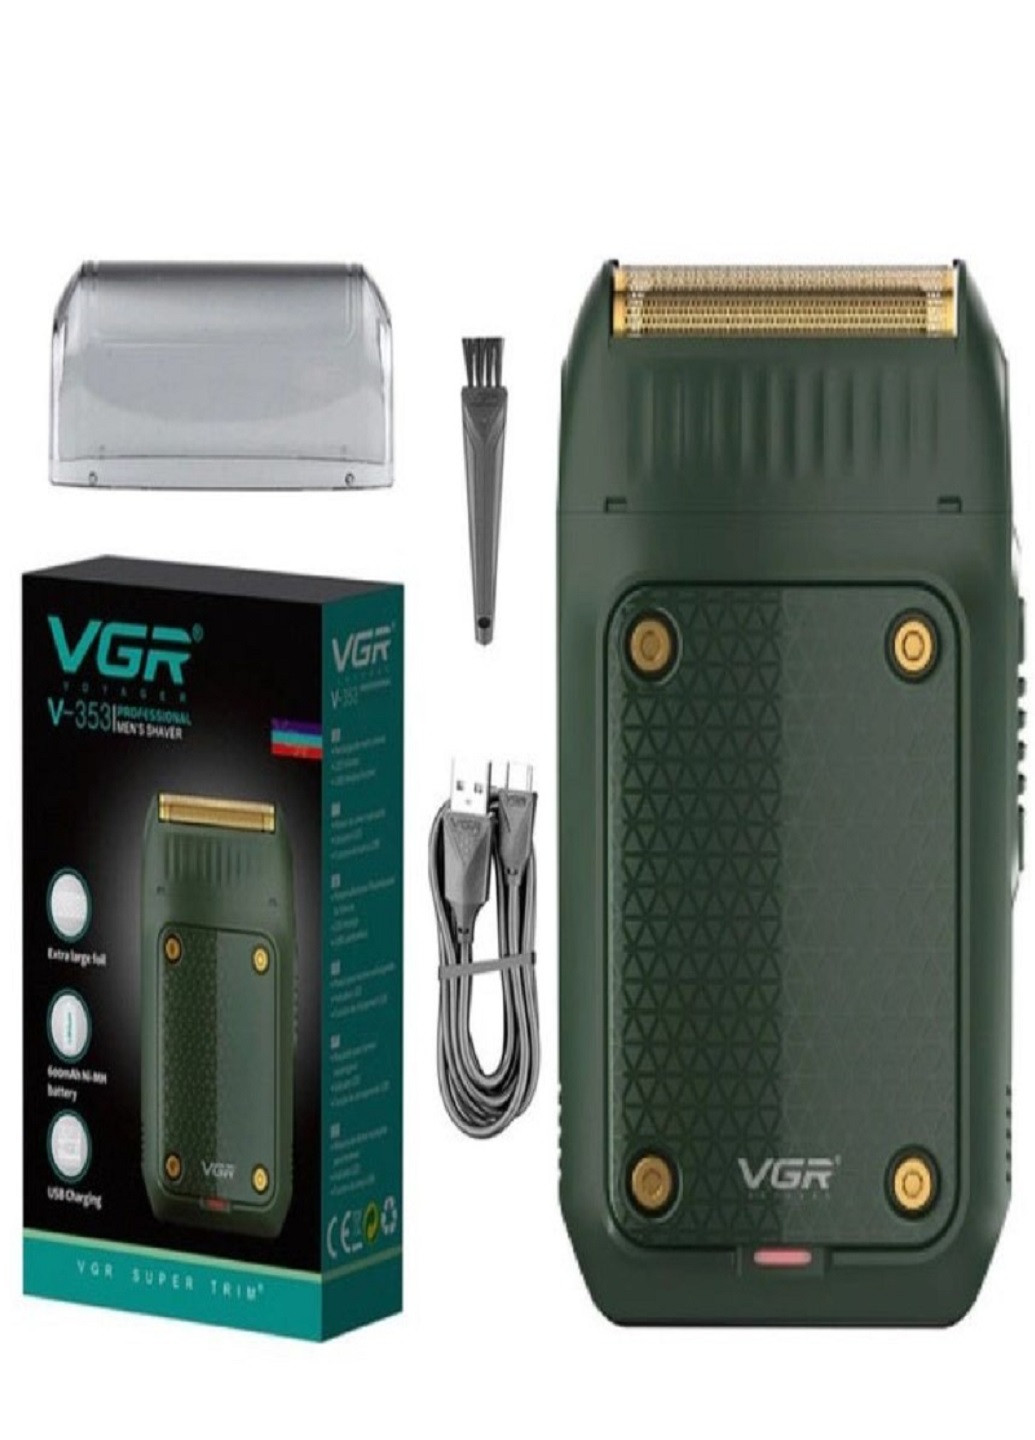 Электробритва V-353 бритва аккумуляторная VGR (277979681)